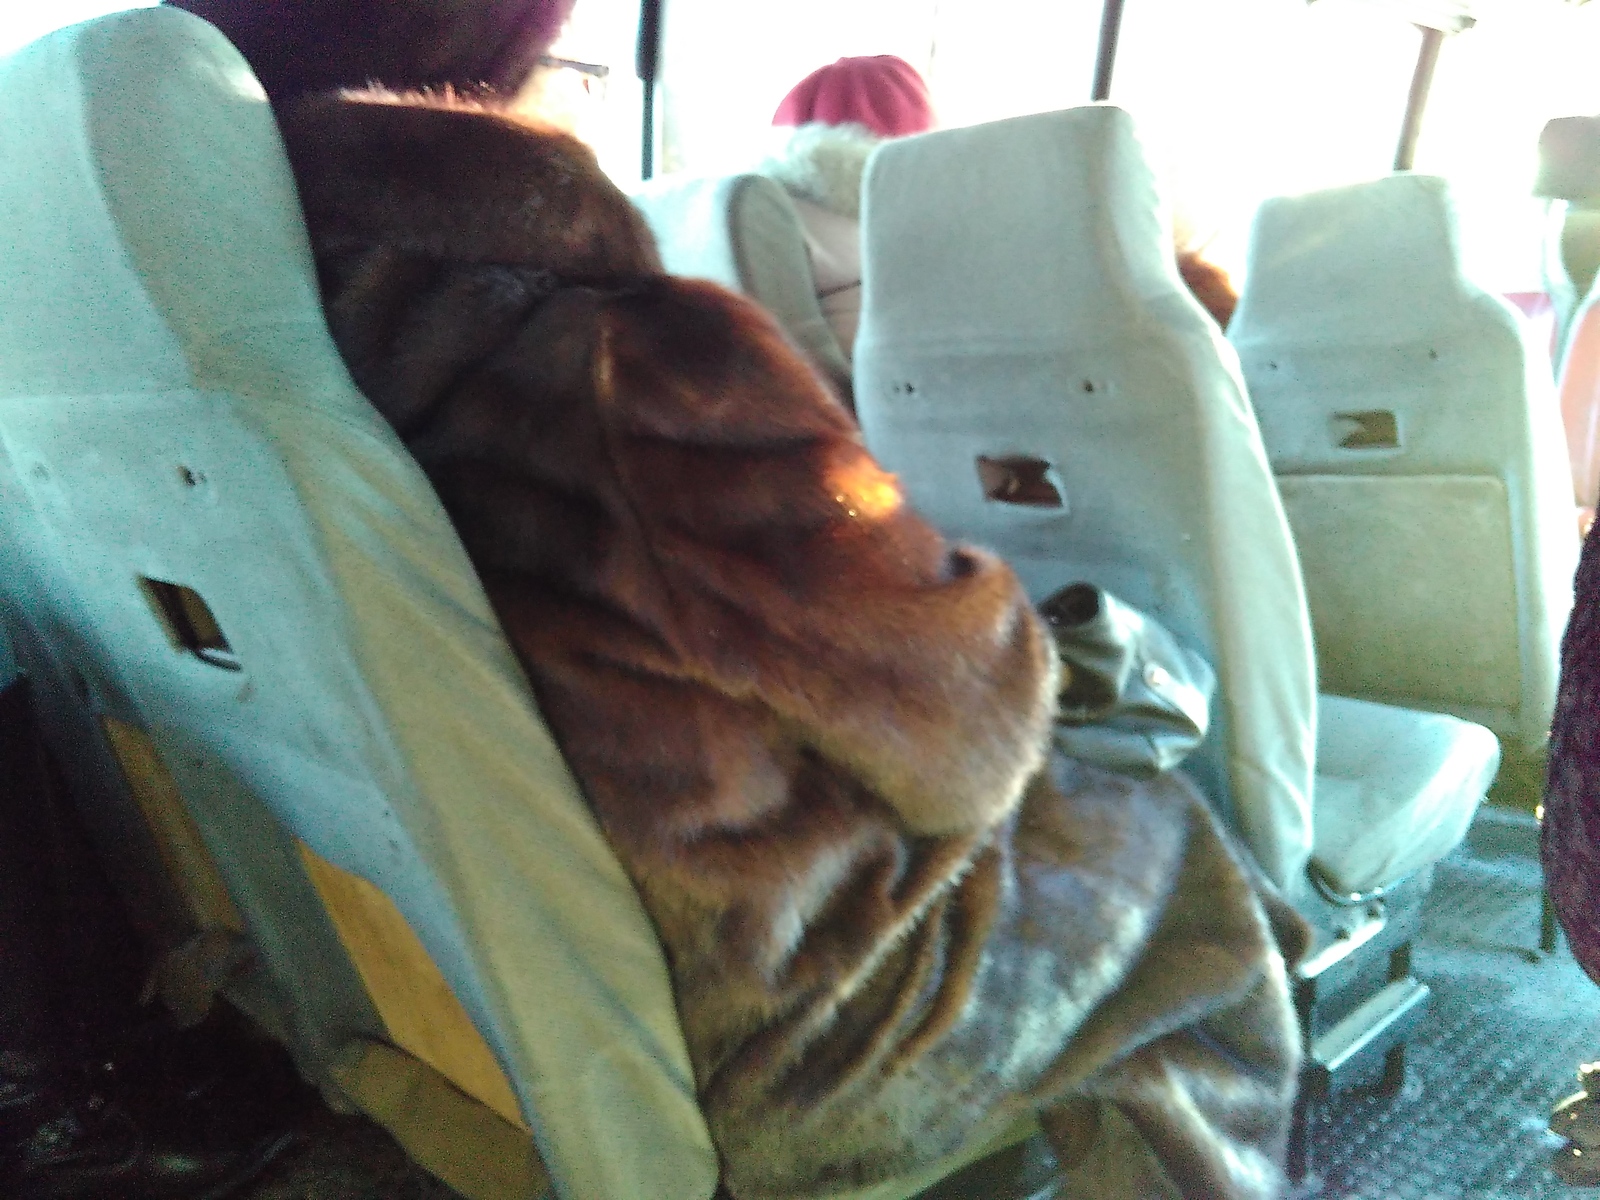 In the minibus - My, Minibus, Seat, Transport